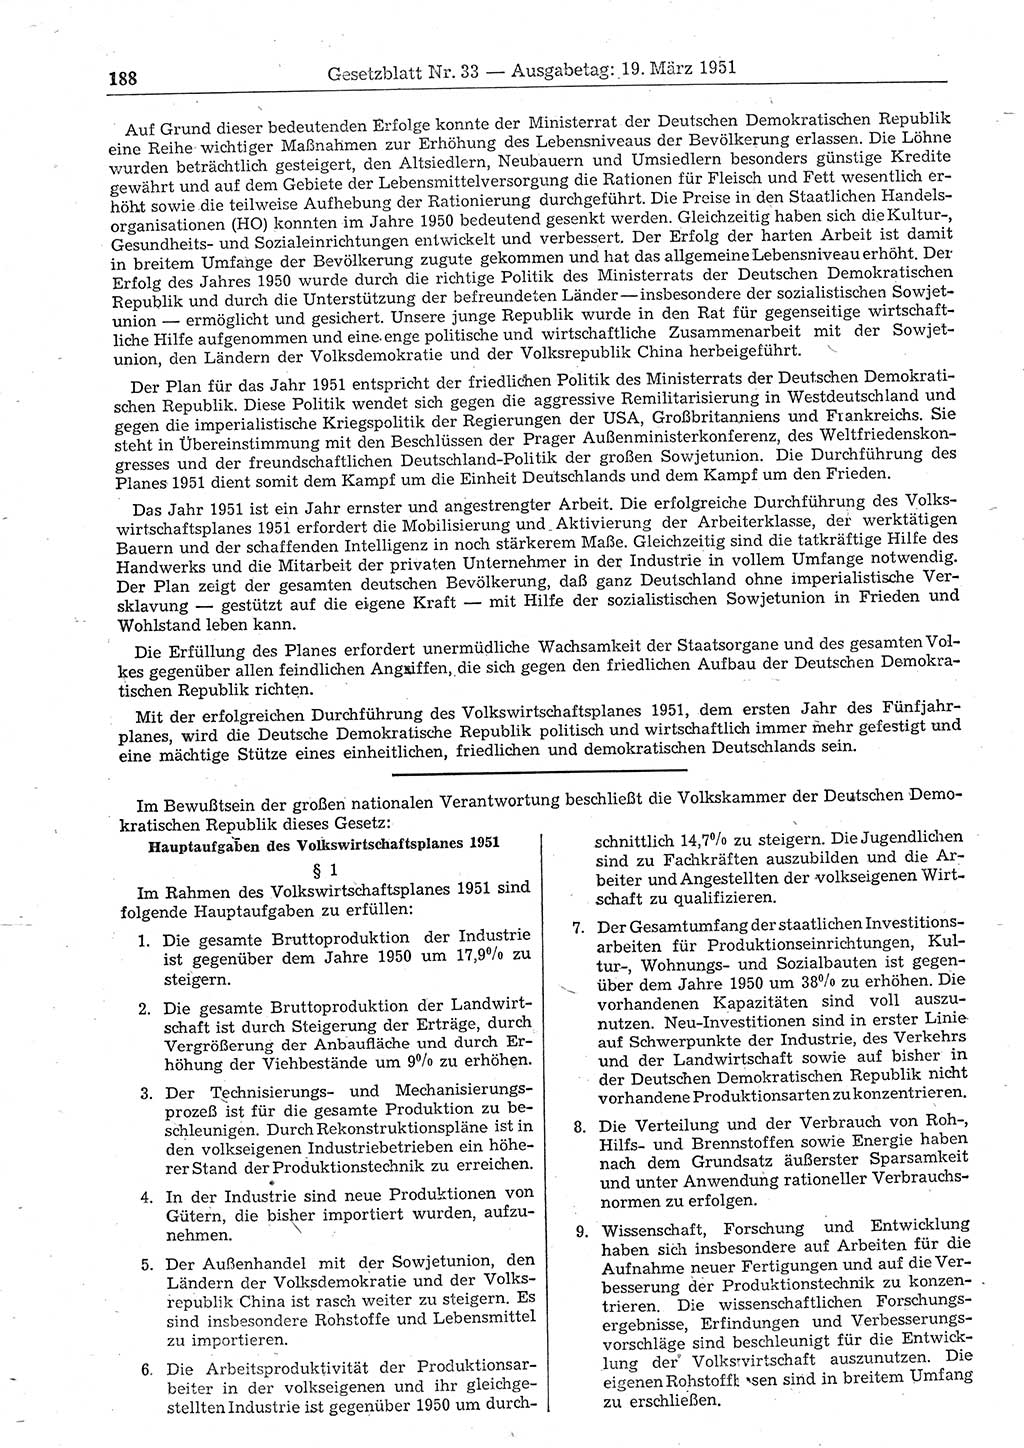 Gesetzblatt (GBl.) der Deutschen Demokratischen Republik (DDR) 1951, Seite 188 (GBl. DDR 1951, S. 188)